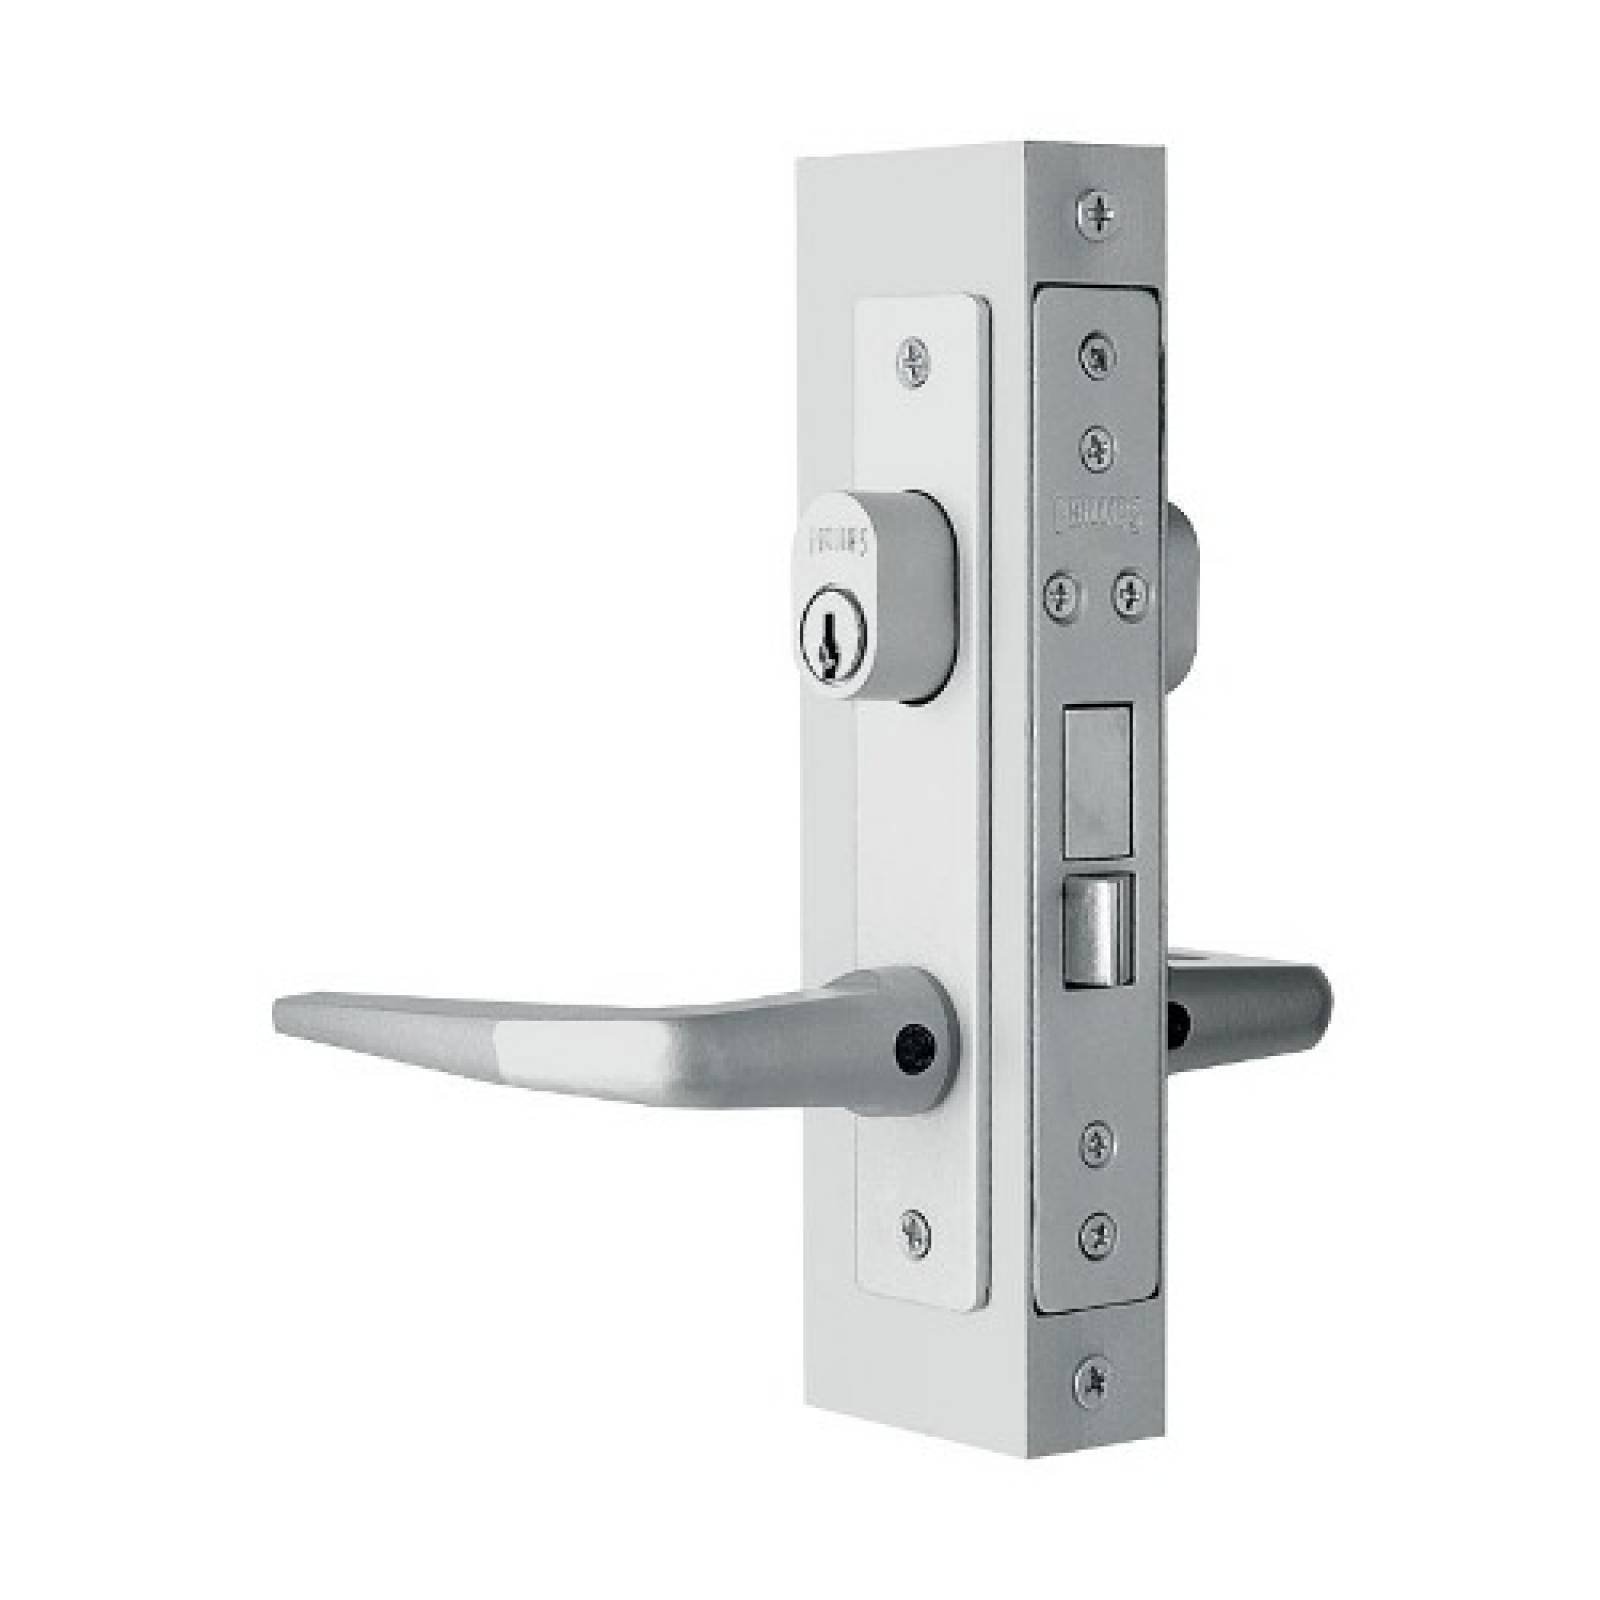 cerradura-puerta-aluminio-embutir-as-549-blanco-phillips